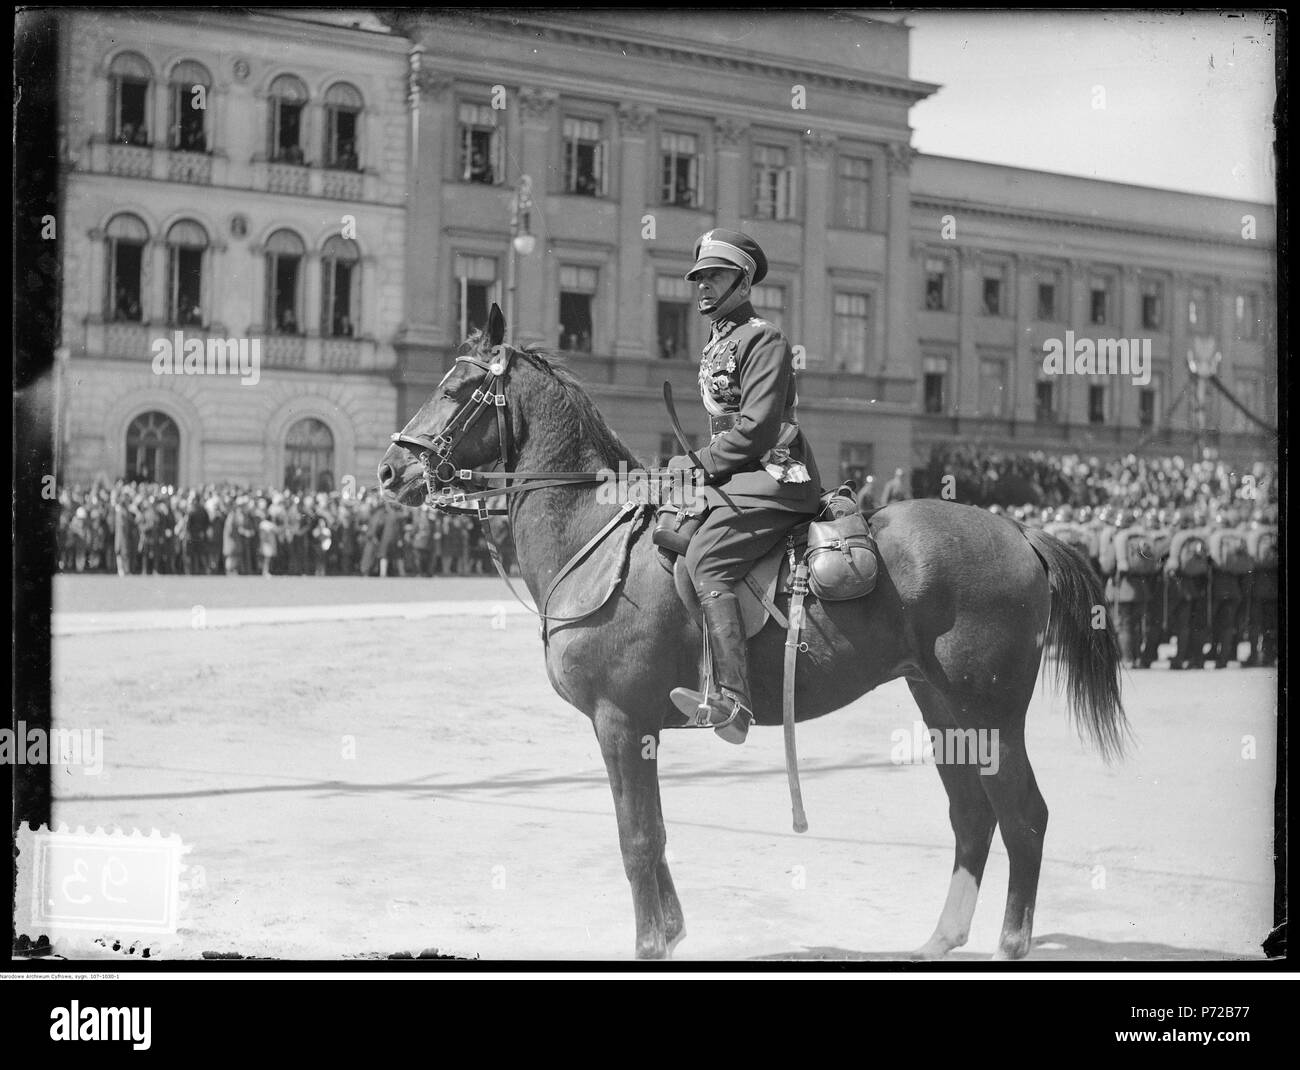 71 Narcyz Witczak-Witaczyński - Uroczystość na pl. marsz. Józefa Piłsudskiego (107-1030-1) Stock Photo